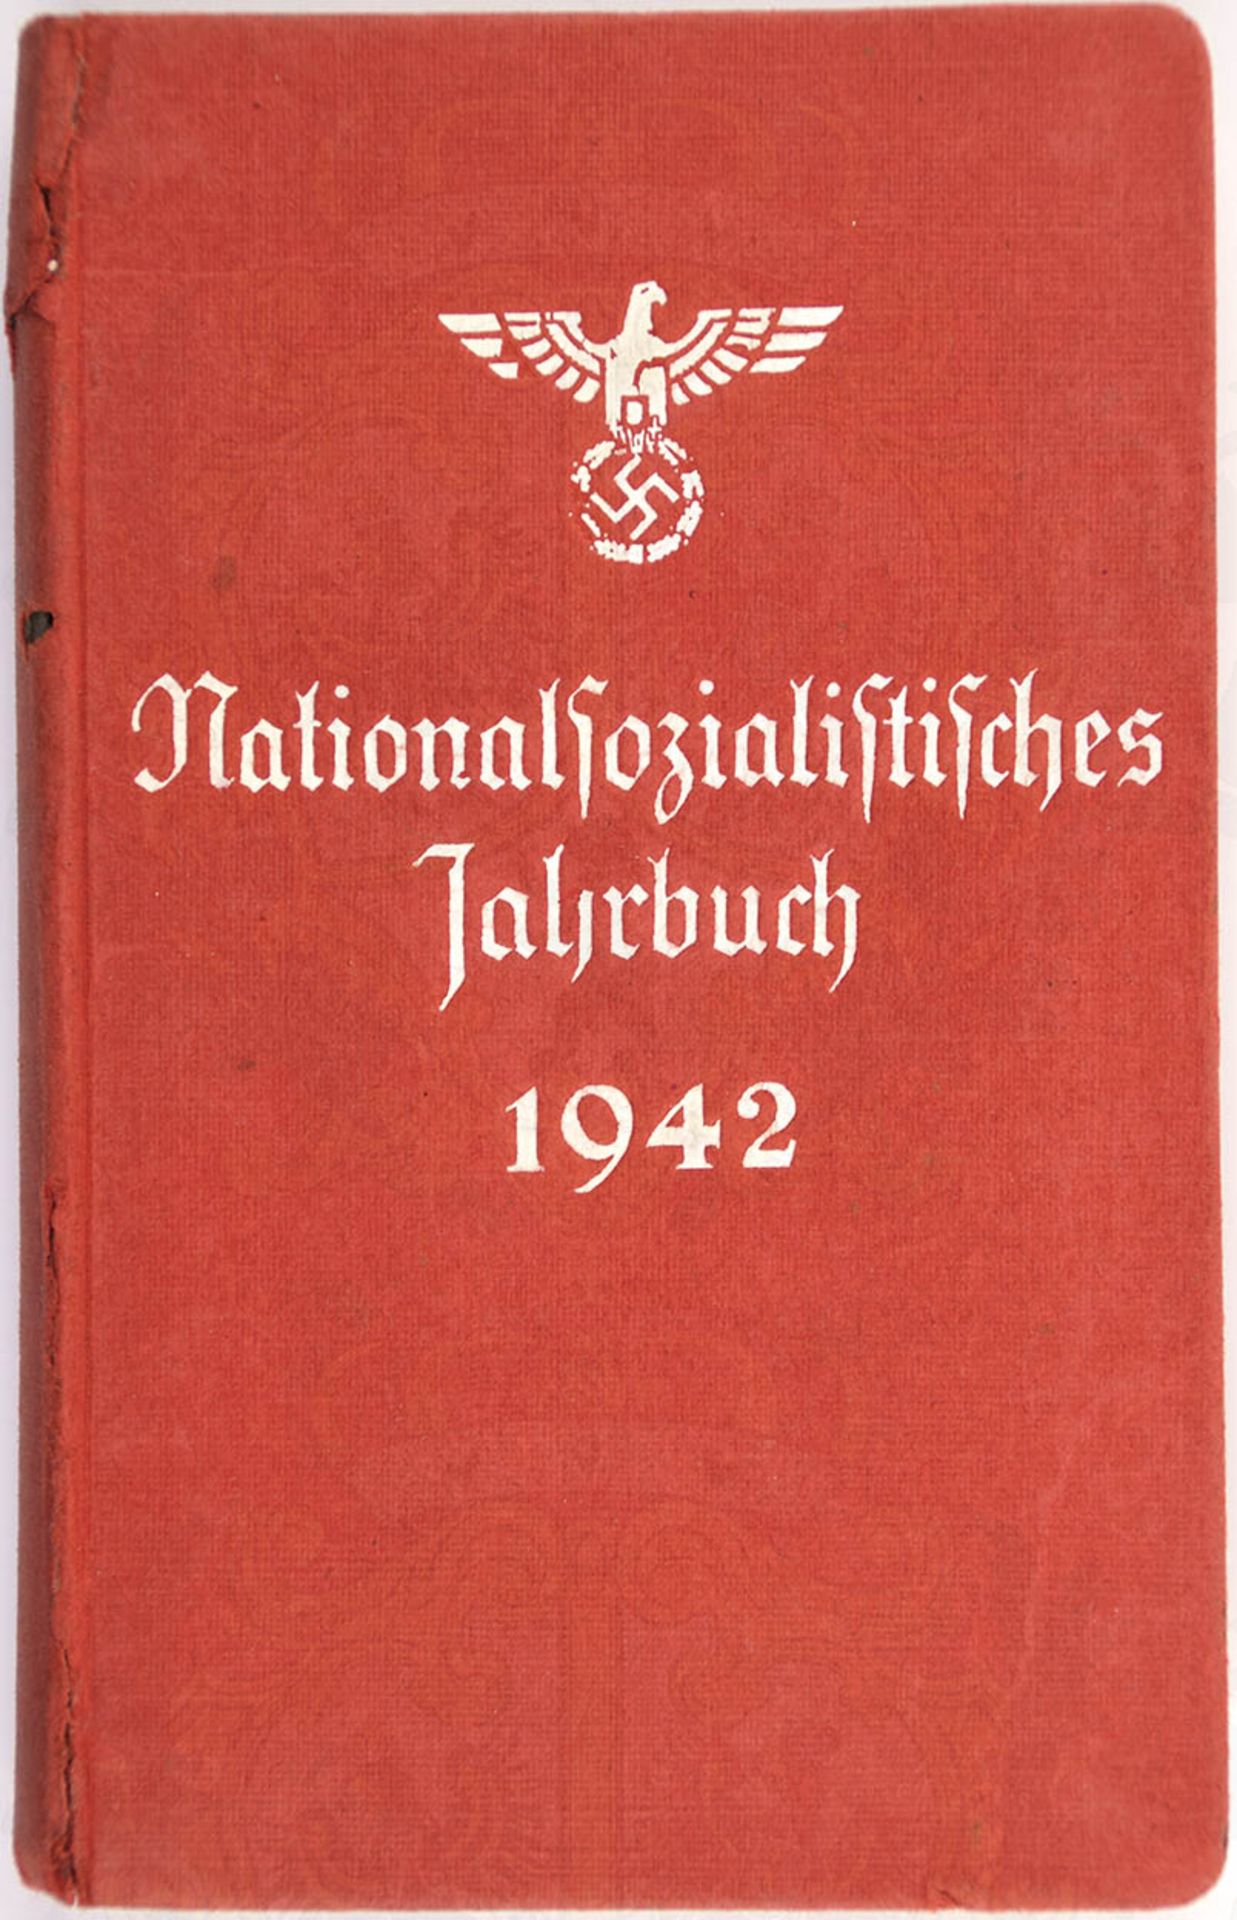 NATIONALSOZIALISTISCHES JAHRBUCH 1942, Zentralverlag der NSDAP München, 504 S., Abb., Ehrentafel,